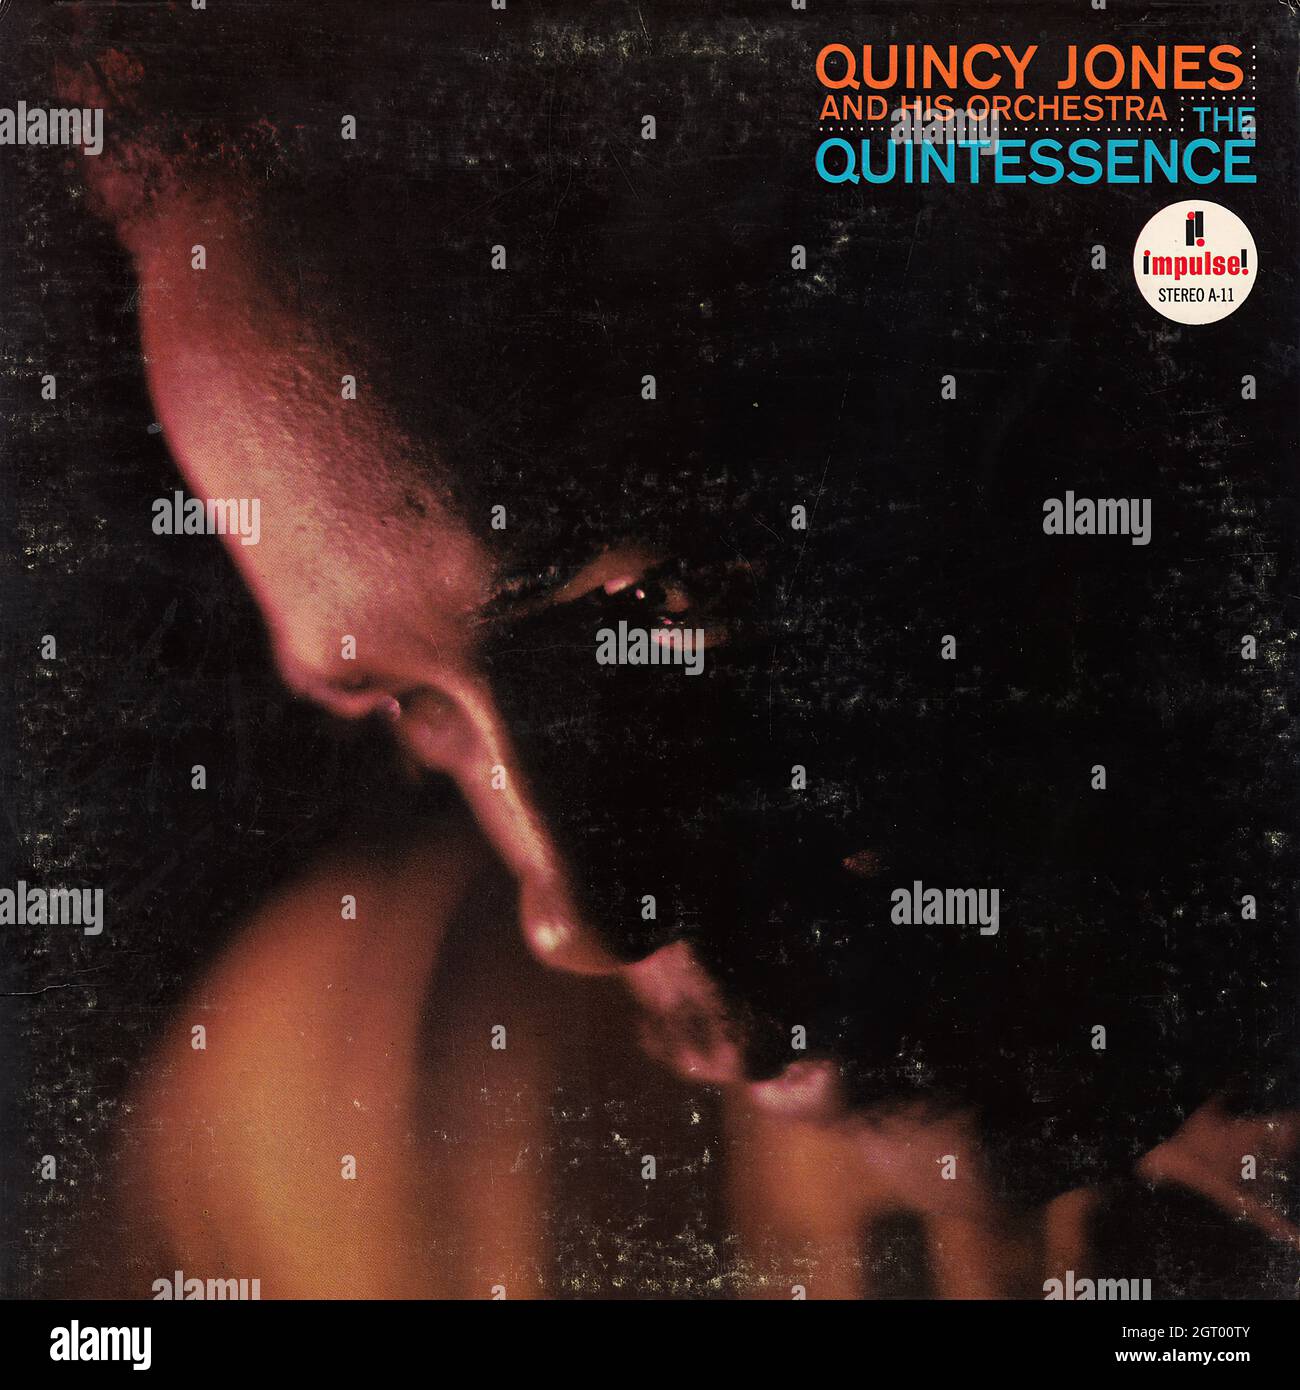 Quincy Jones e la sua orchestra - la quintessenza - copertina Vintage Vinyl Record Foto Stock